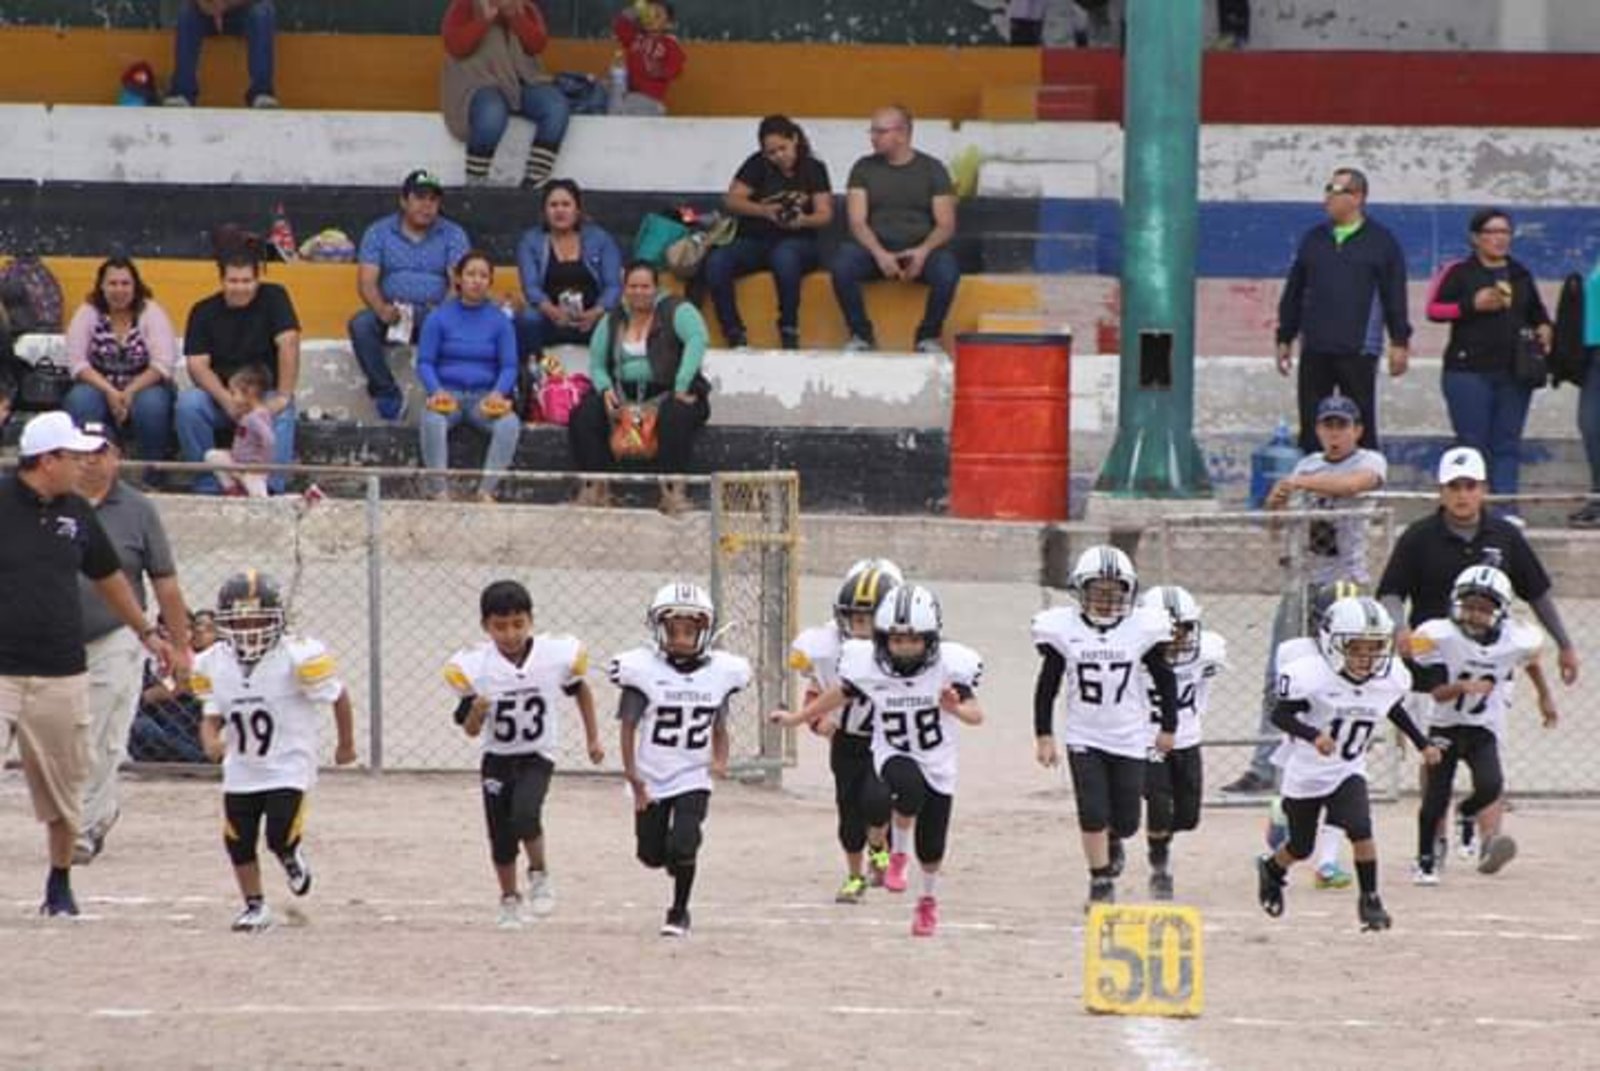 En la categoría Hormiguitas, las Panteras de la Deportiva Torreón llegan invictas y son consideradas favoritas para ganar el campeonato.